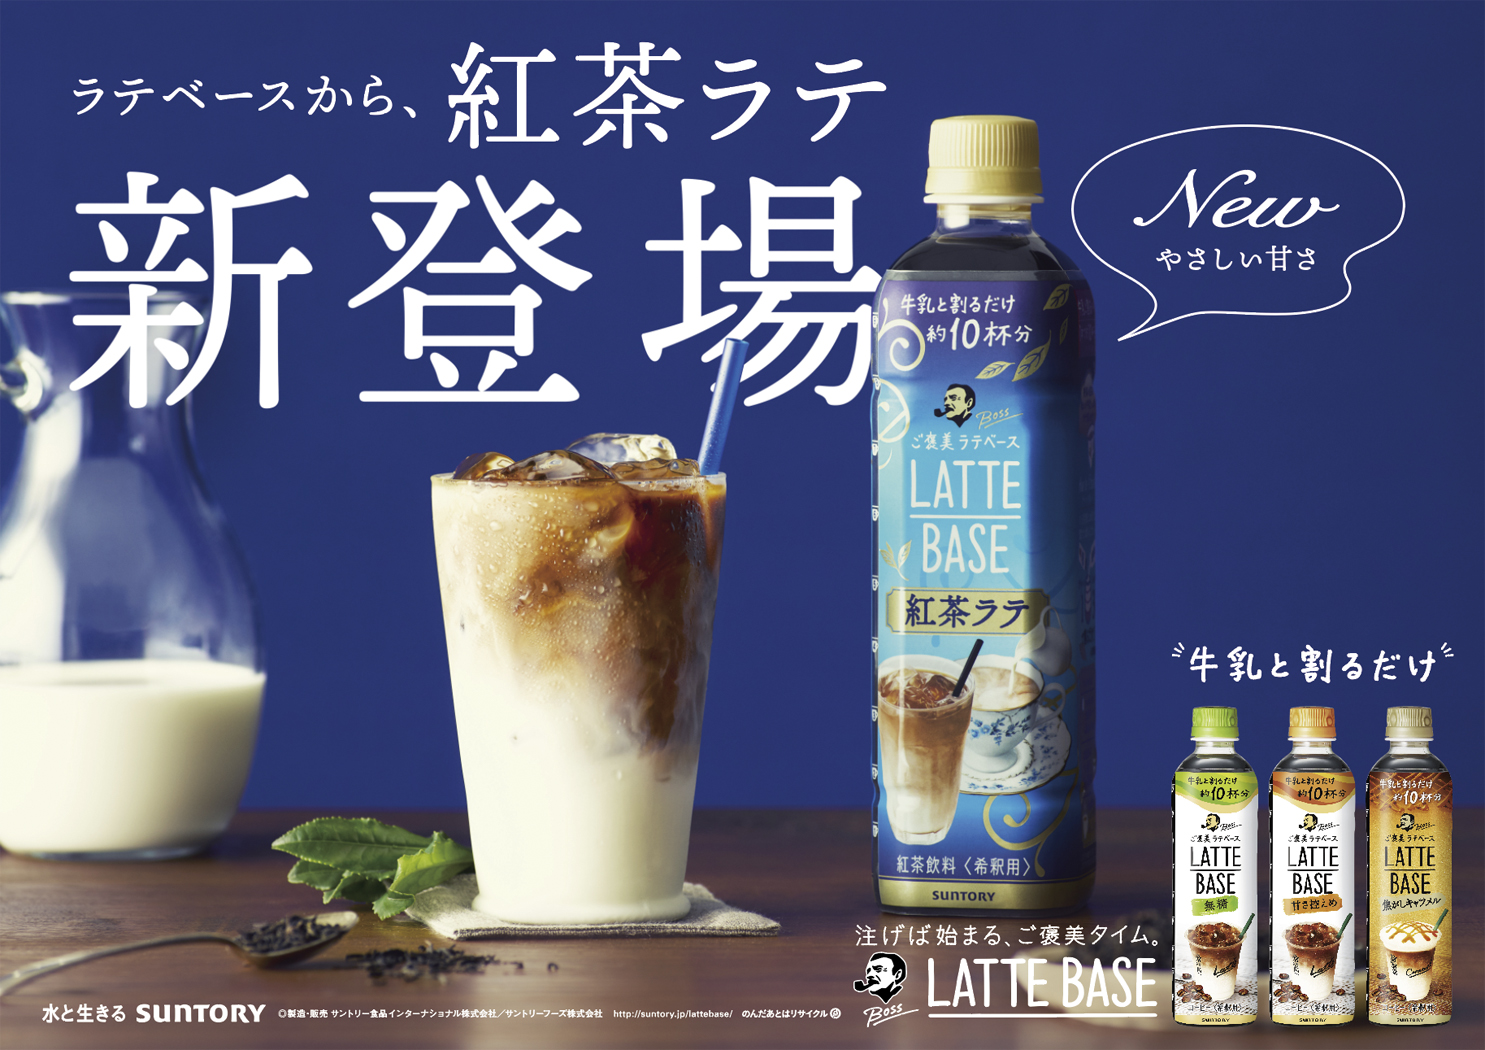 Suntory boss LatteBase tealatte B3board